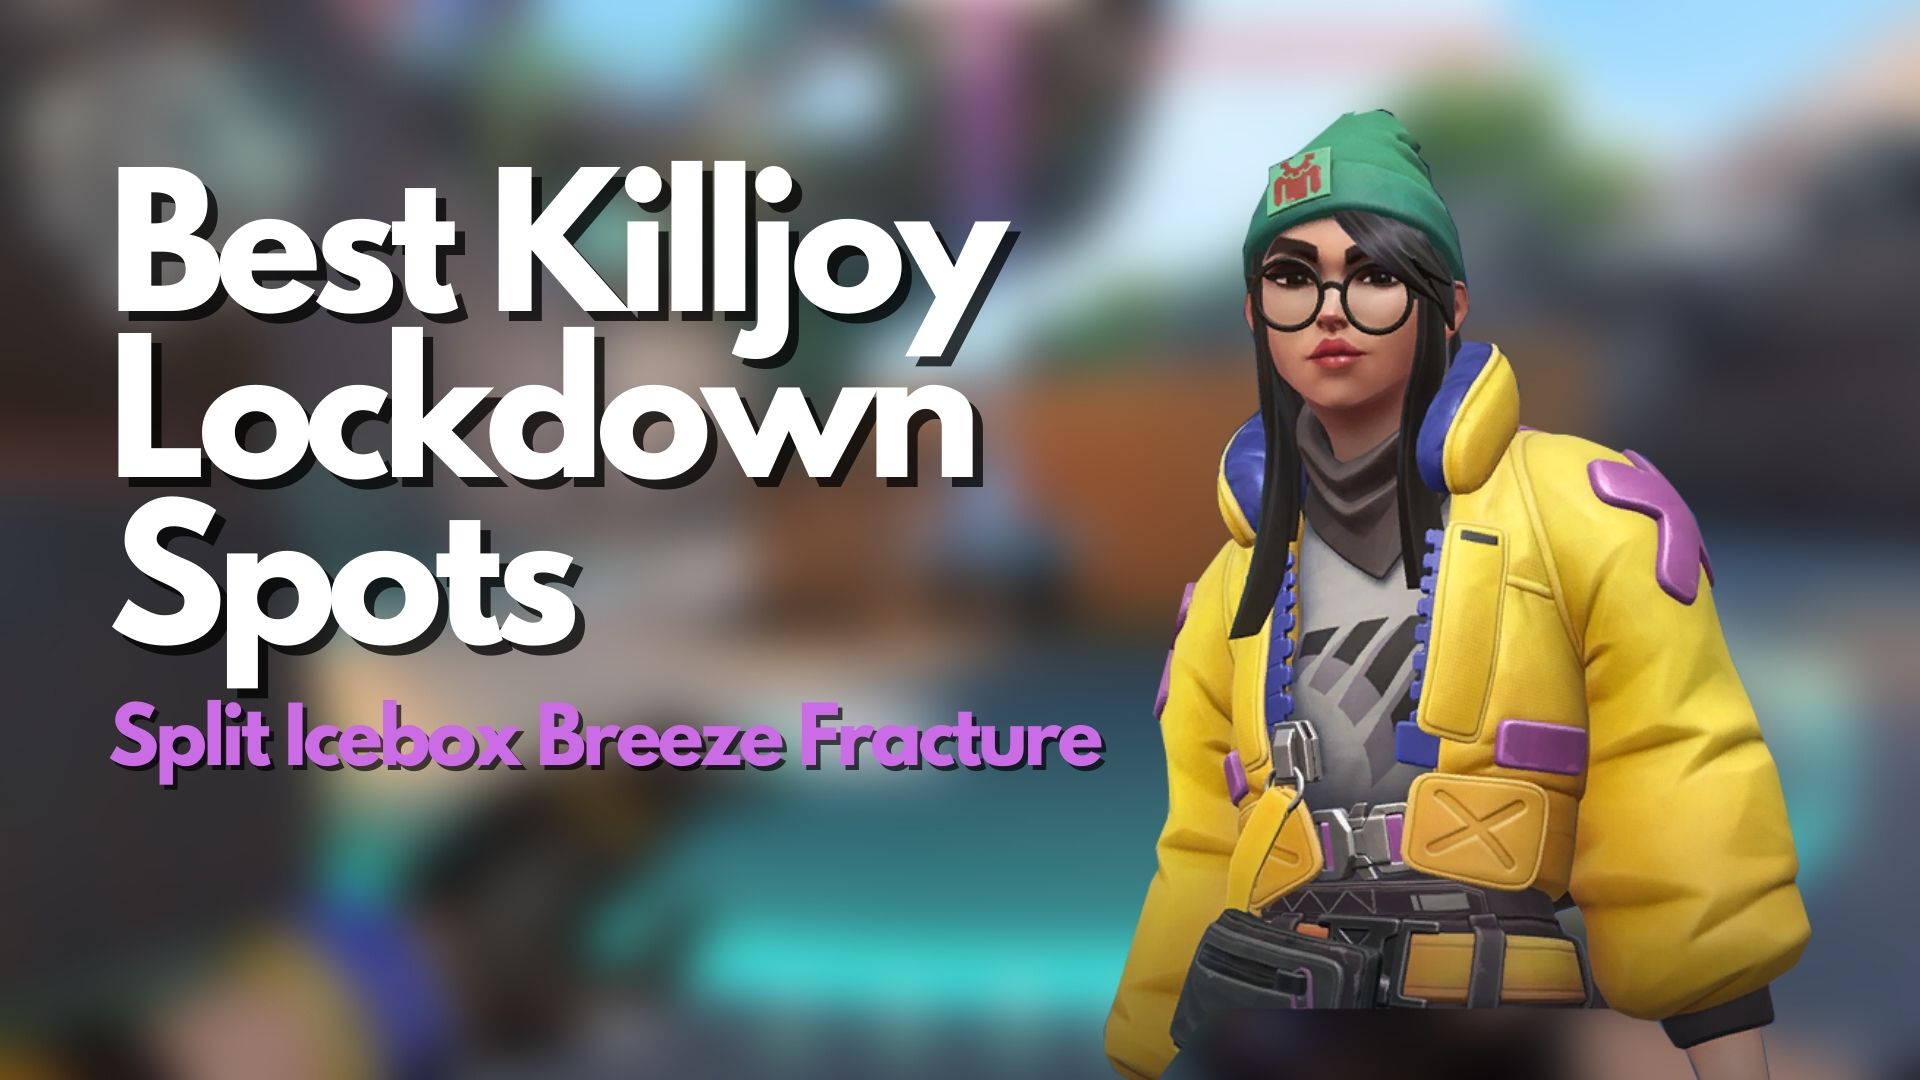 Best Killjoy Lockdown Spots for Split, Icebox, Breeze, and Fracture in Valorant